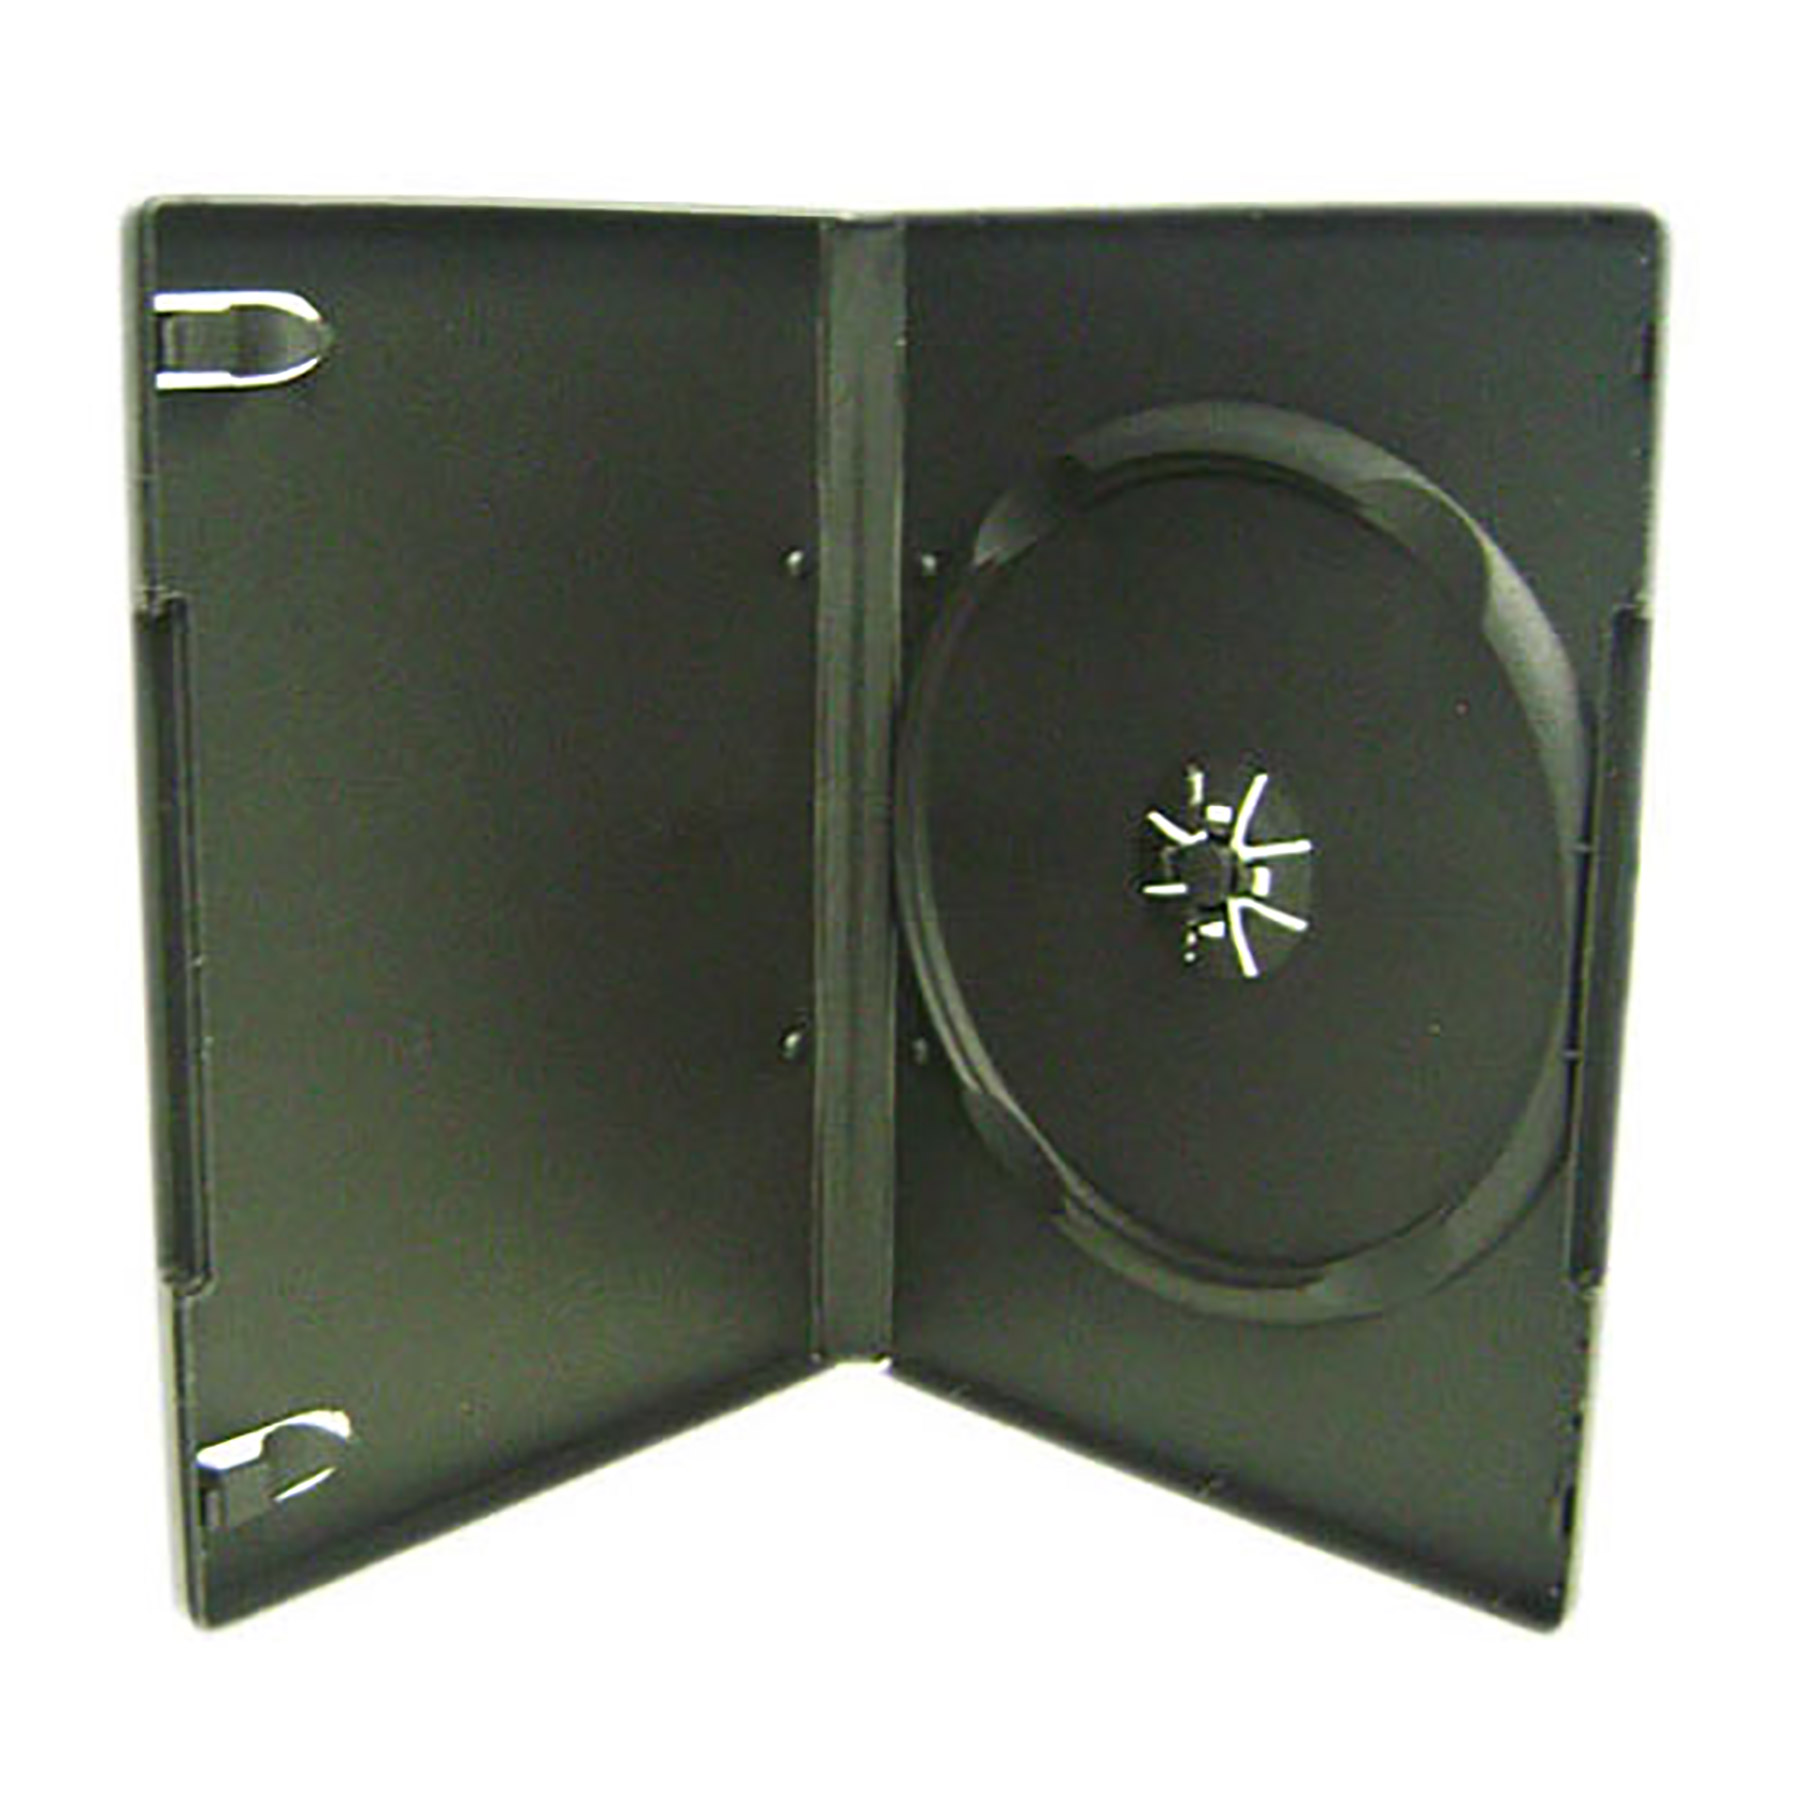 Package 14. DVD Case Disc 4 pk Viva. 10 Pk Viva Premium Black Single DVD Case Box 14mm Eco Solid DVD Case hold 1 Disc.